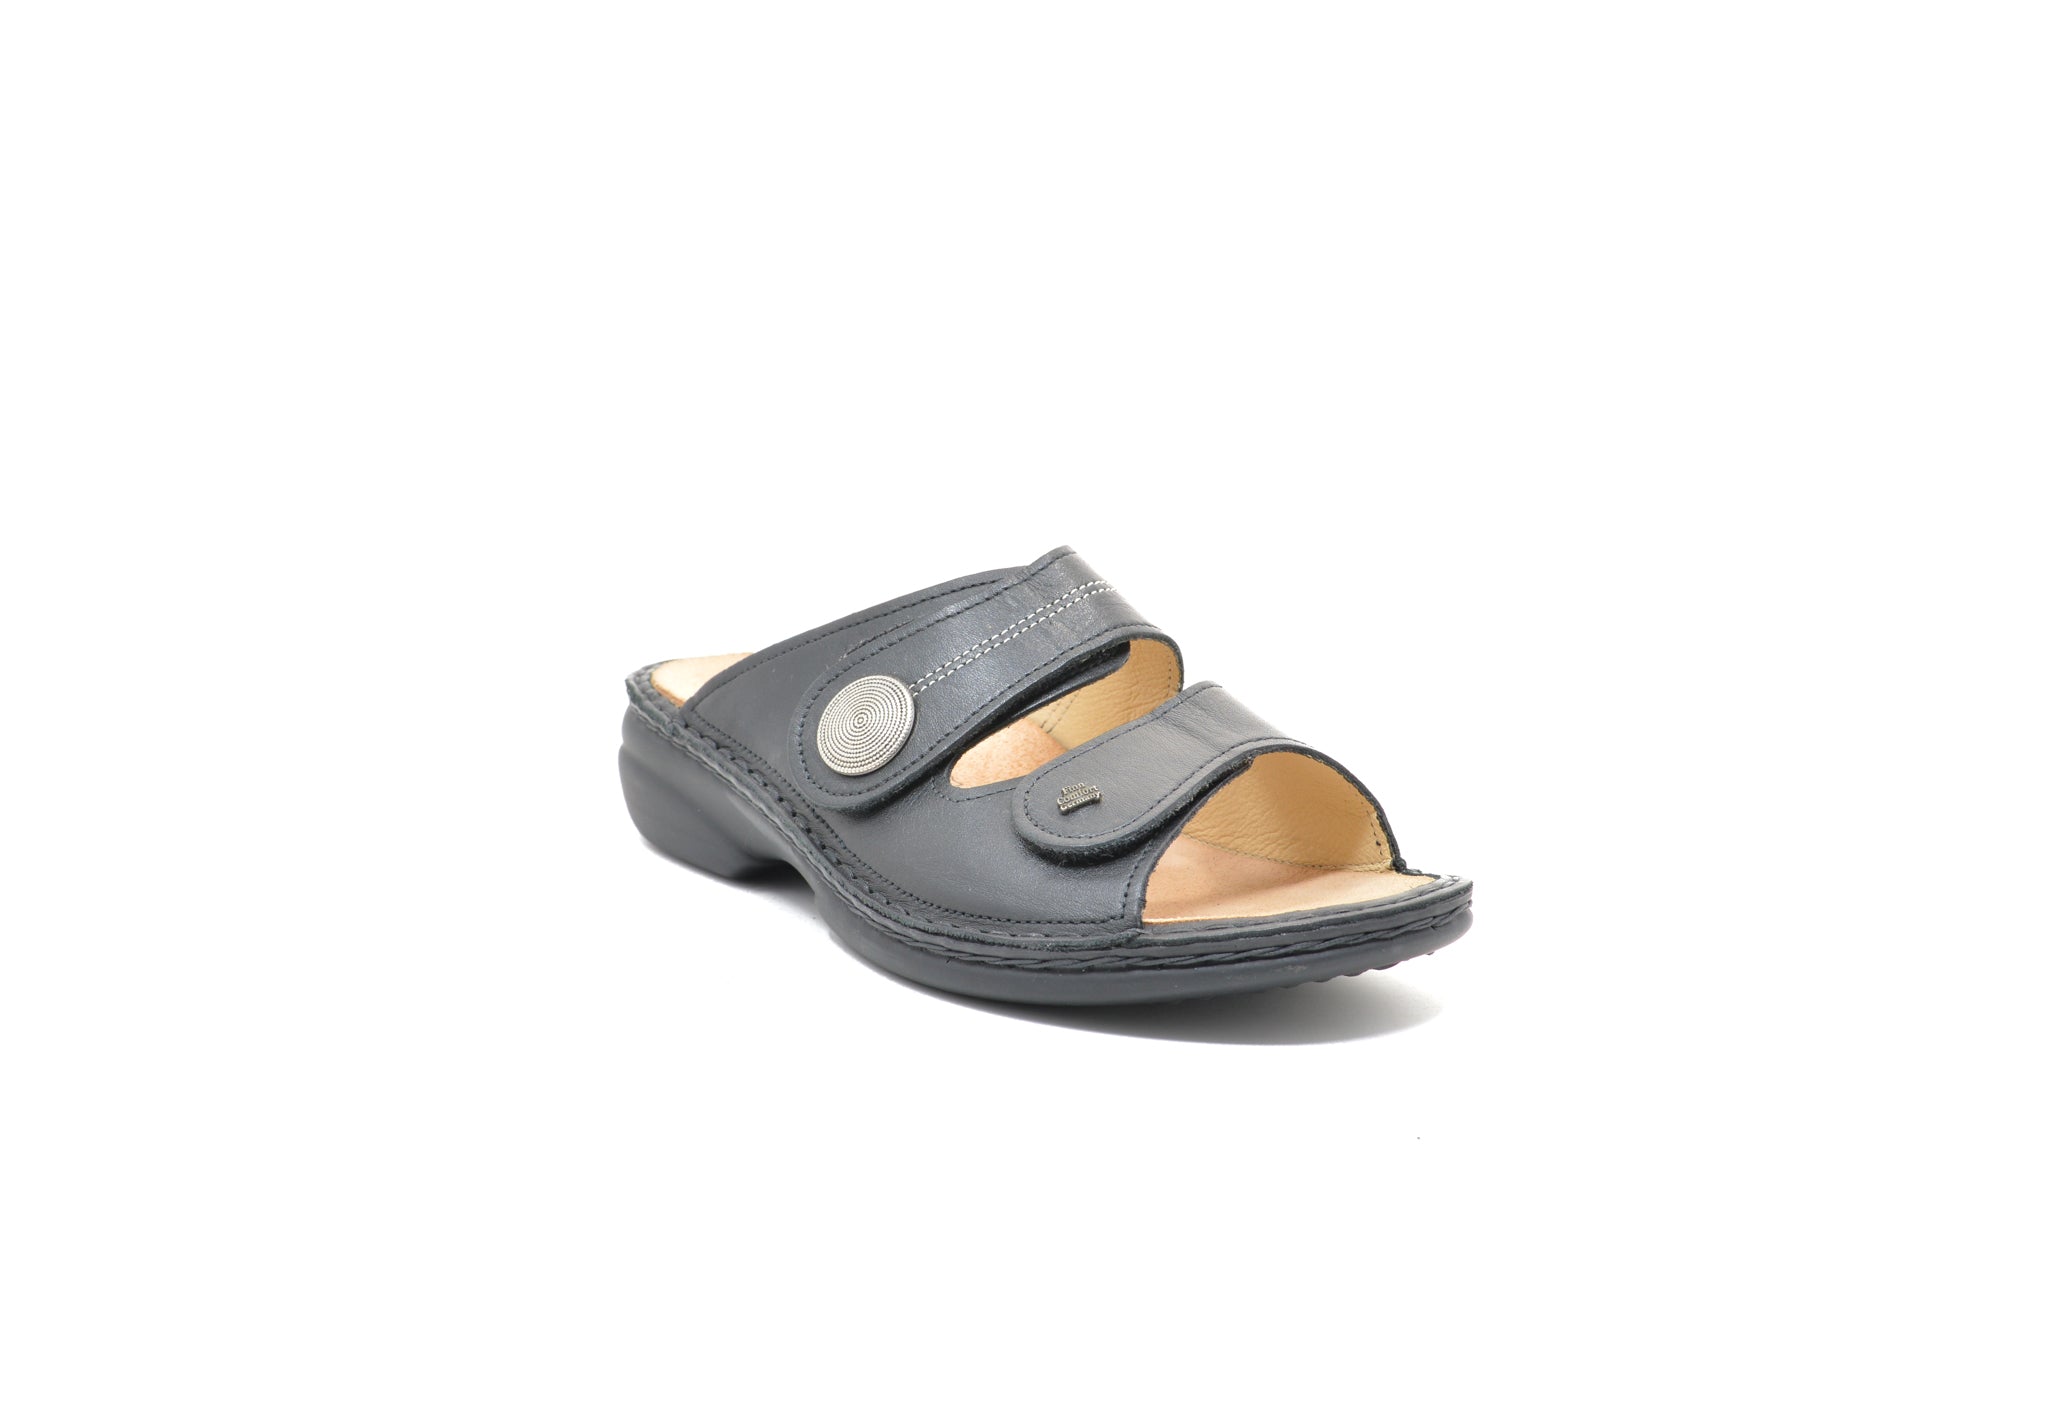 Finn Comfort – Letellier Shoes